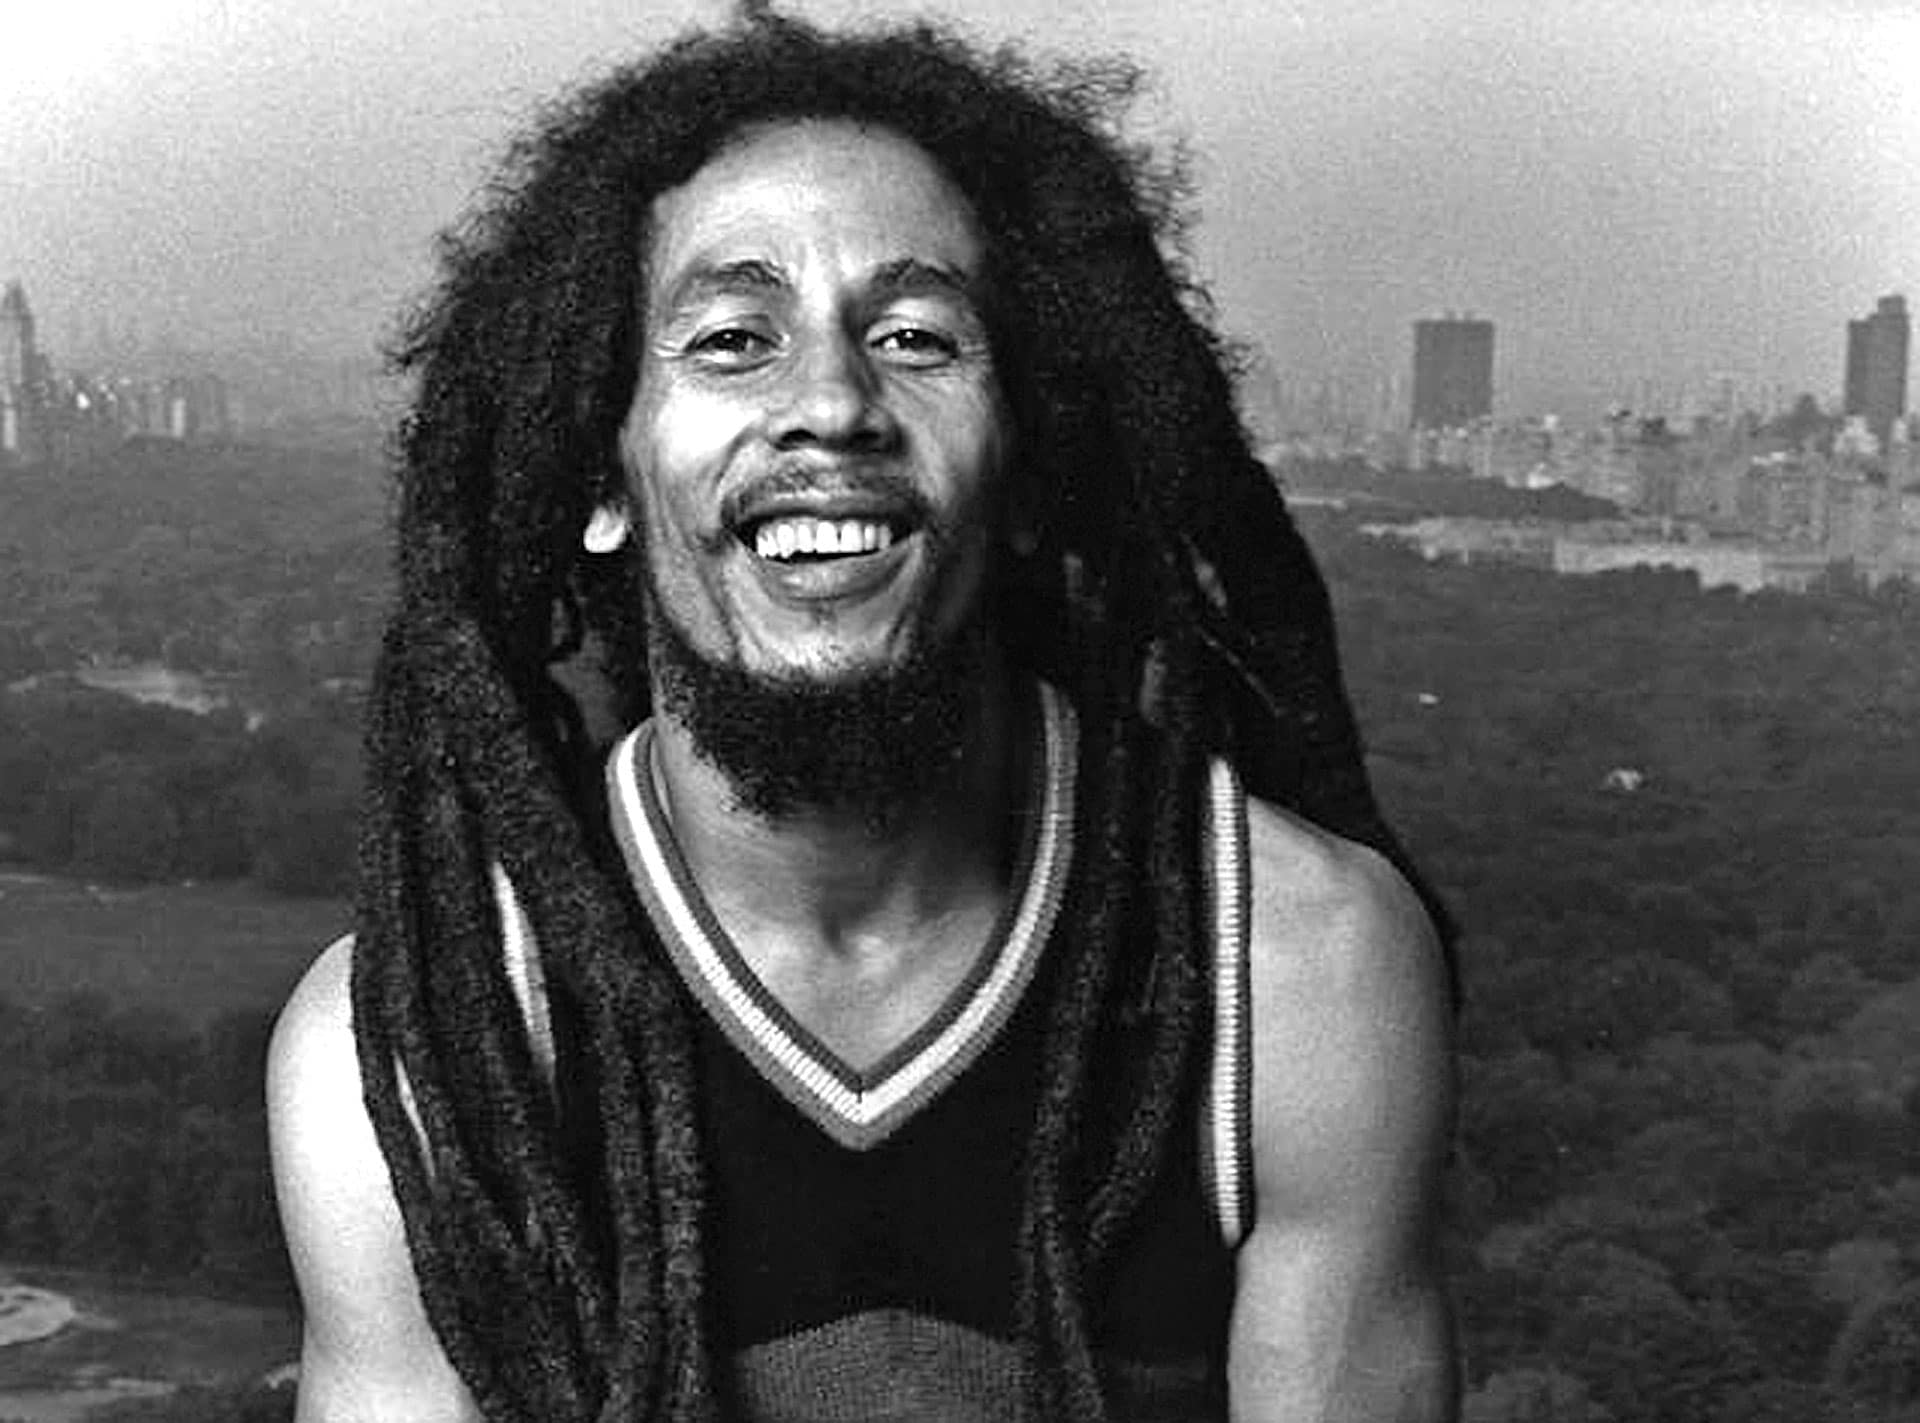 Billboard elege os 50 artistas mais completos de todos os tempos Conhe%C3%A7a-a-trajet%C3%B3ria-do-rei-do-reggae-Bob-Marley-Segundo-Parte1